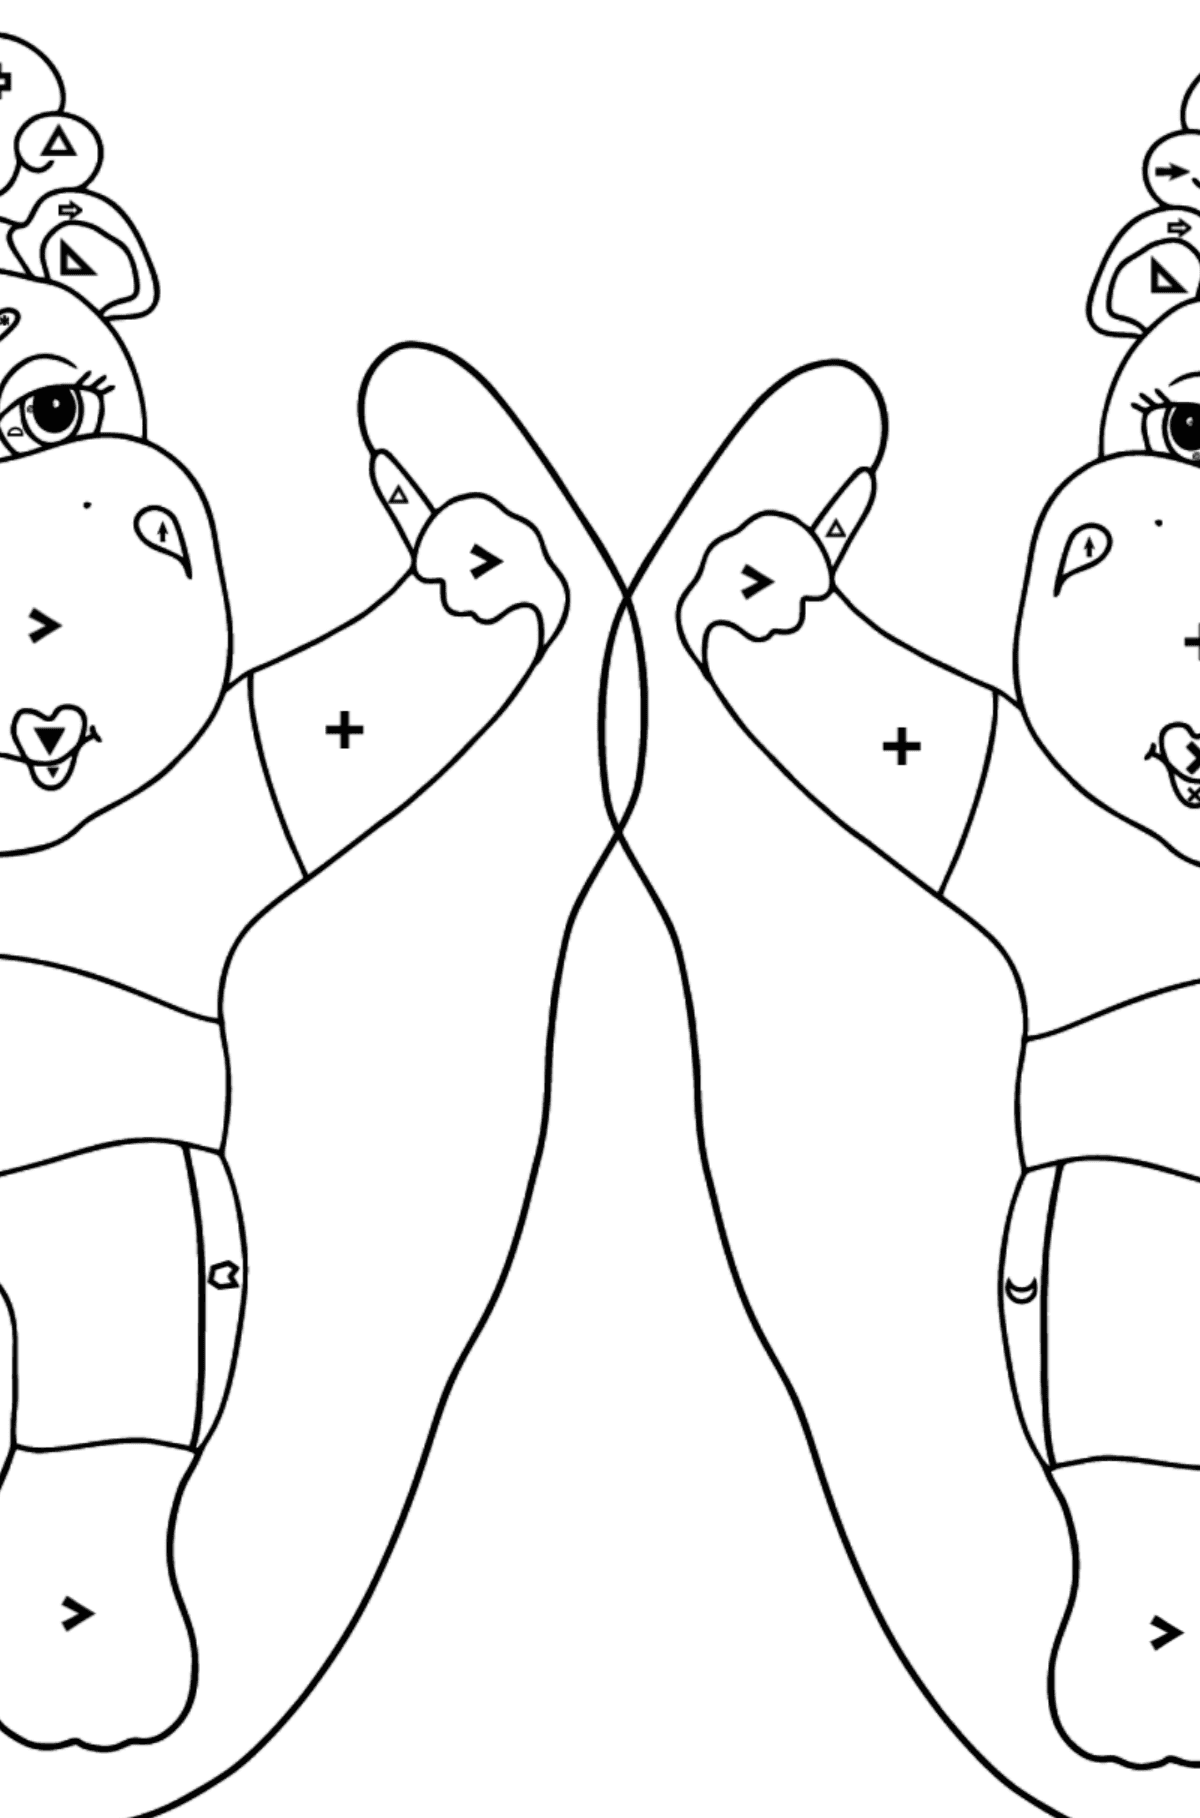 Kolorowanka Śmieszne hipopotamy (trudny) - Kolorowanie według symboli i figur geometrycznych dla dzieci